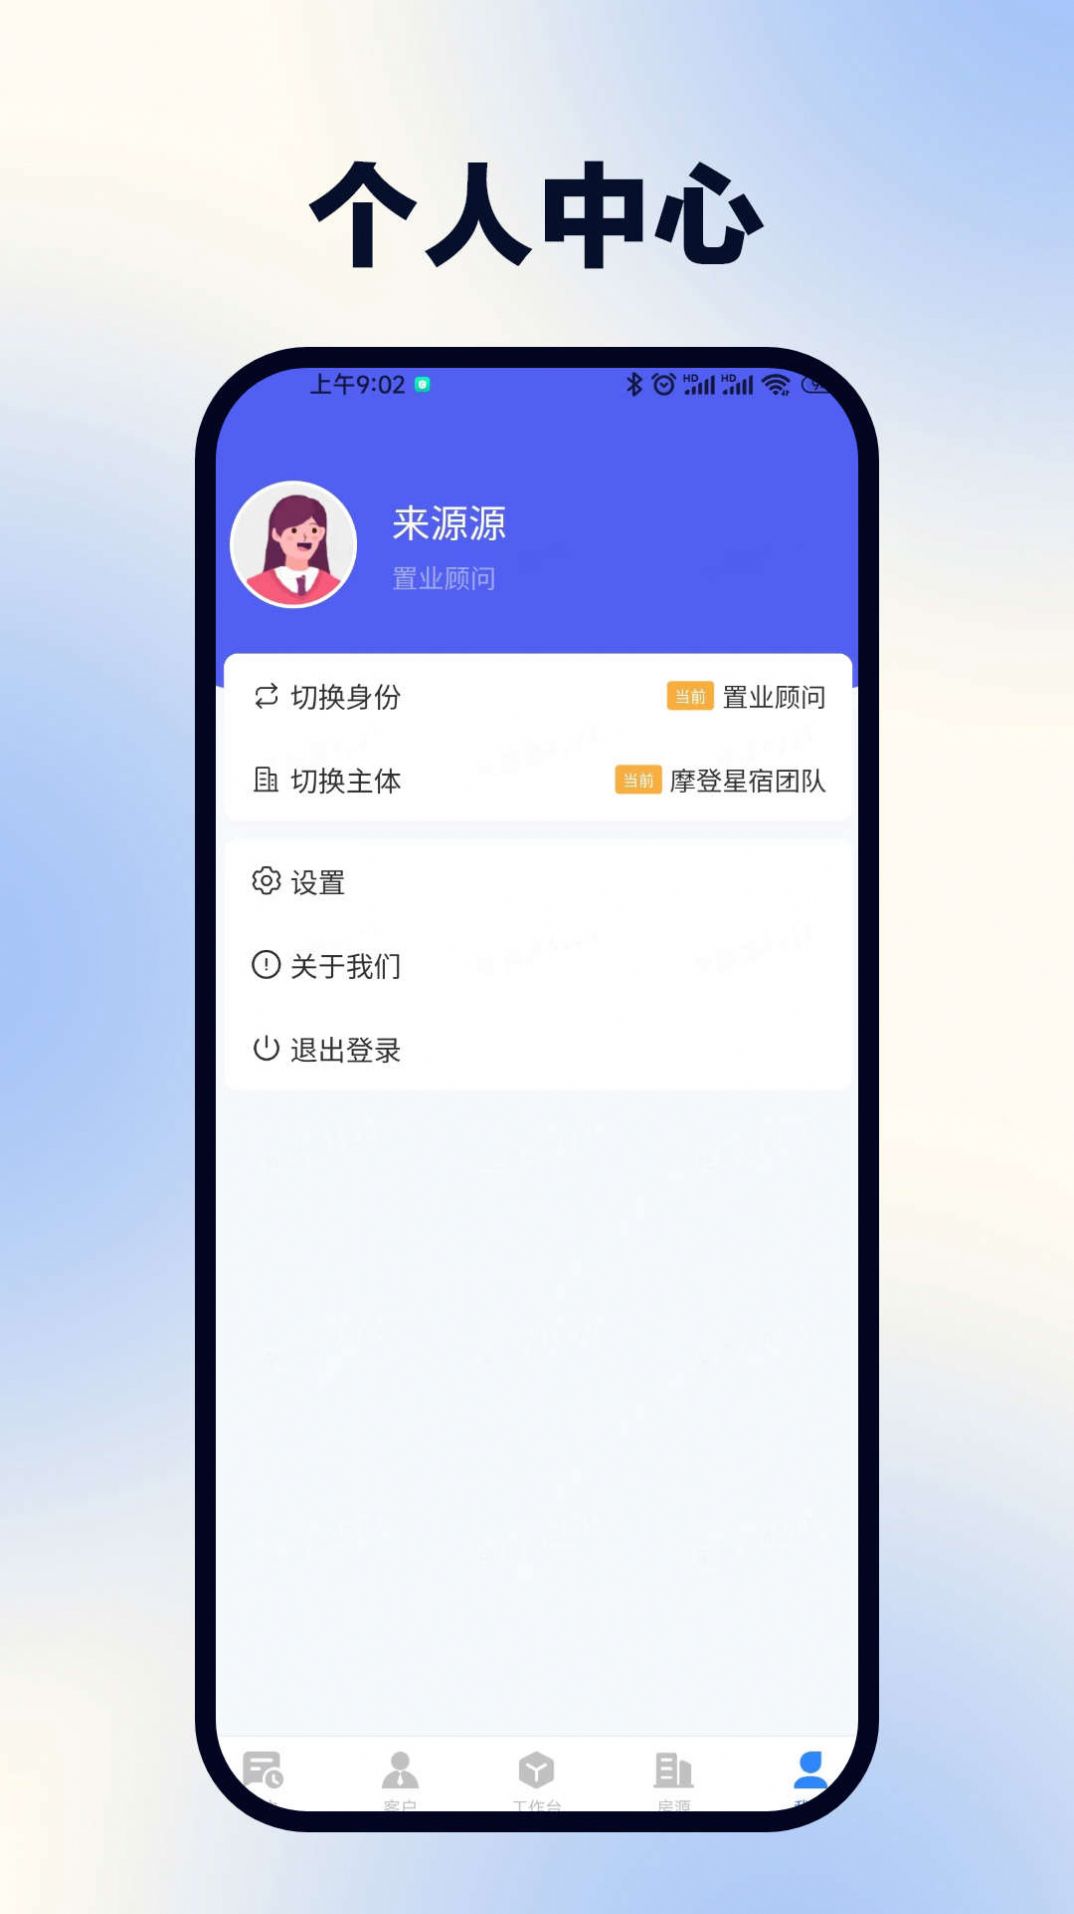 浩翔客户管理app手机版图片1